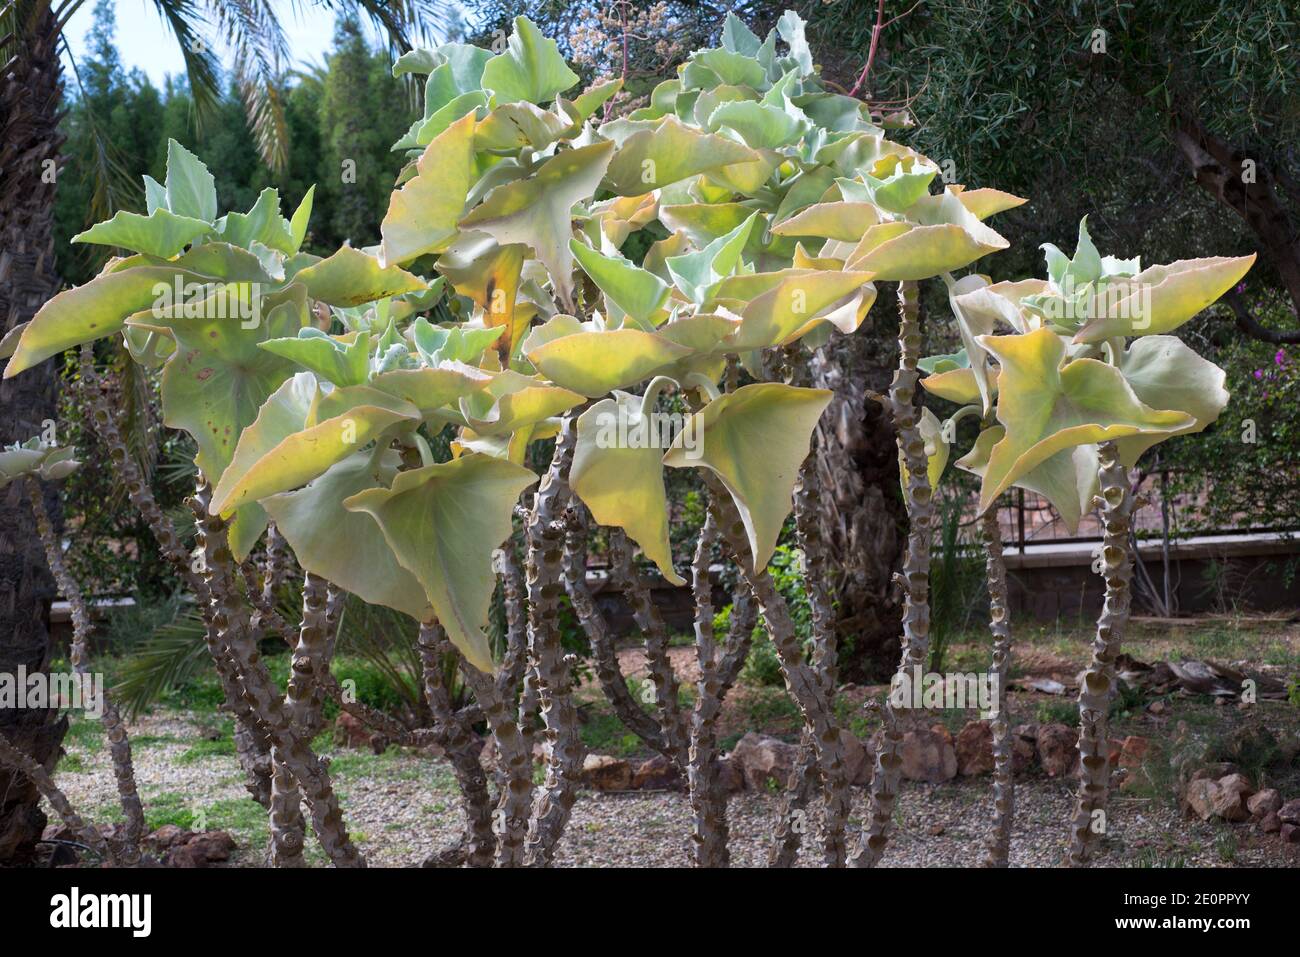 El oído de elefante (Kalanchoe beharensis) es un arbusto suculento endémico de Madagascar. Foto de stock